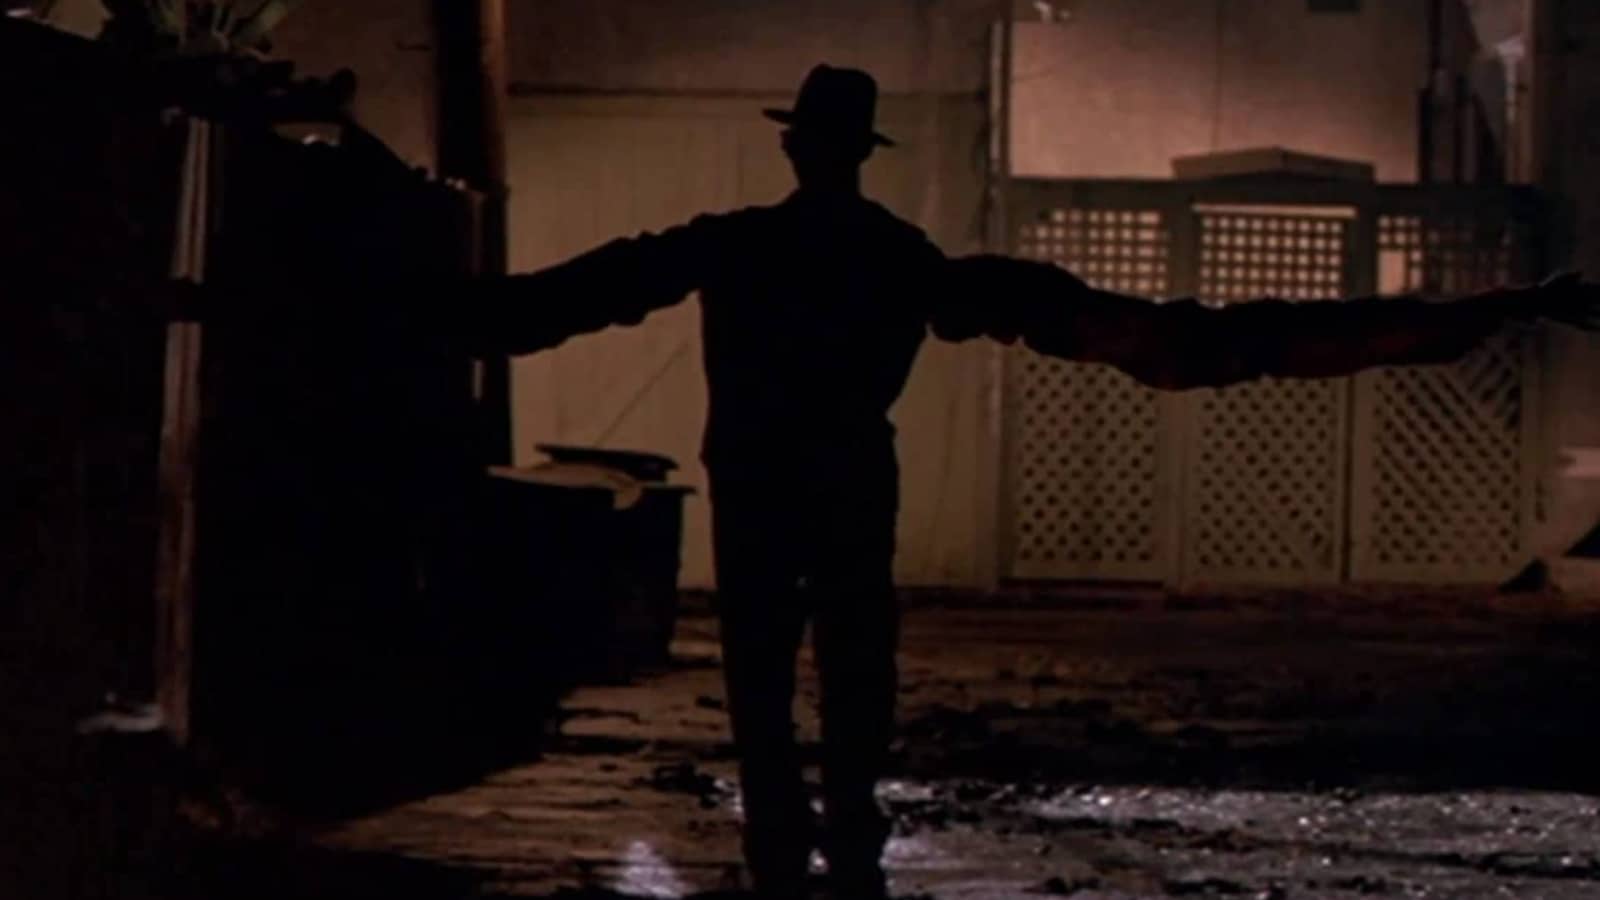 Freddy Krueger, A Nightmare on Elm Street series - 